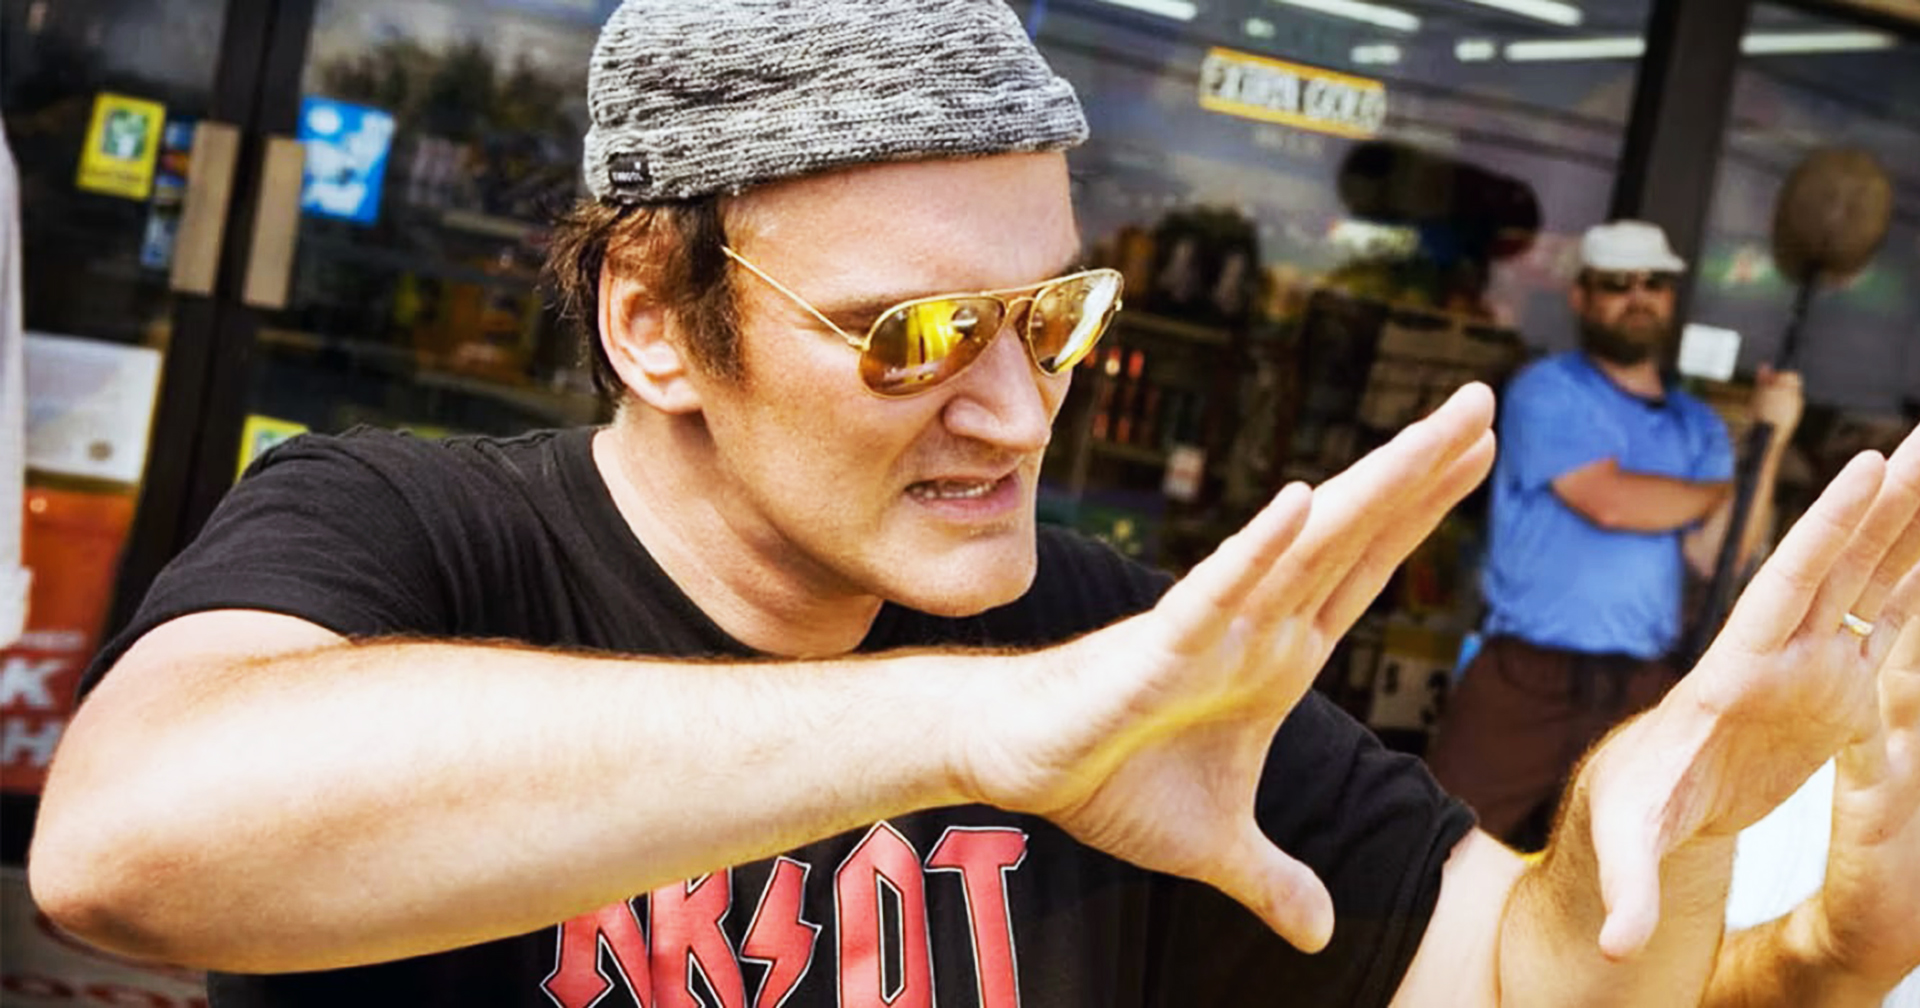 ภาพยนตร์เรื่องสุดท้ายของ Quentin Tarantino จะใช้ชื่อว่า ‘The Movie Critic’ คาราวะแก่ฮอลลีวูดยุค 1970s